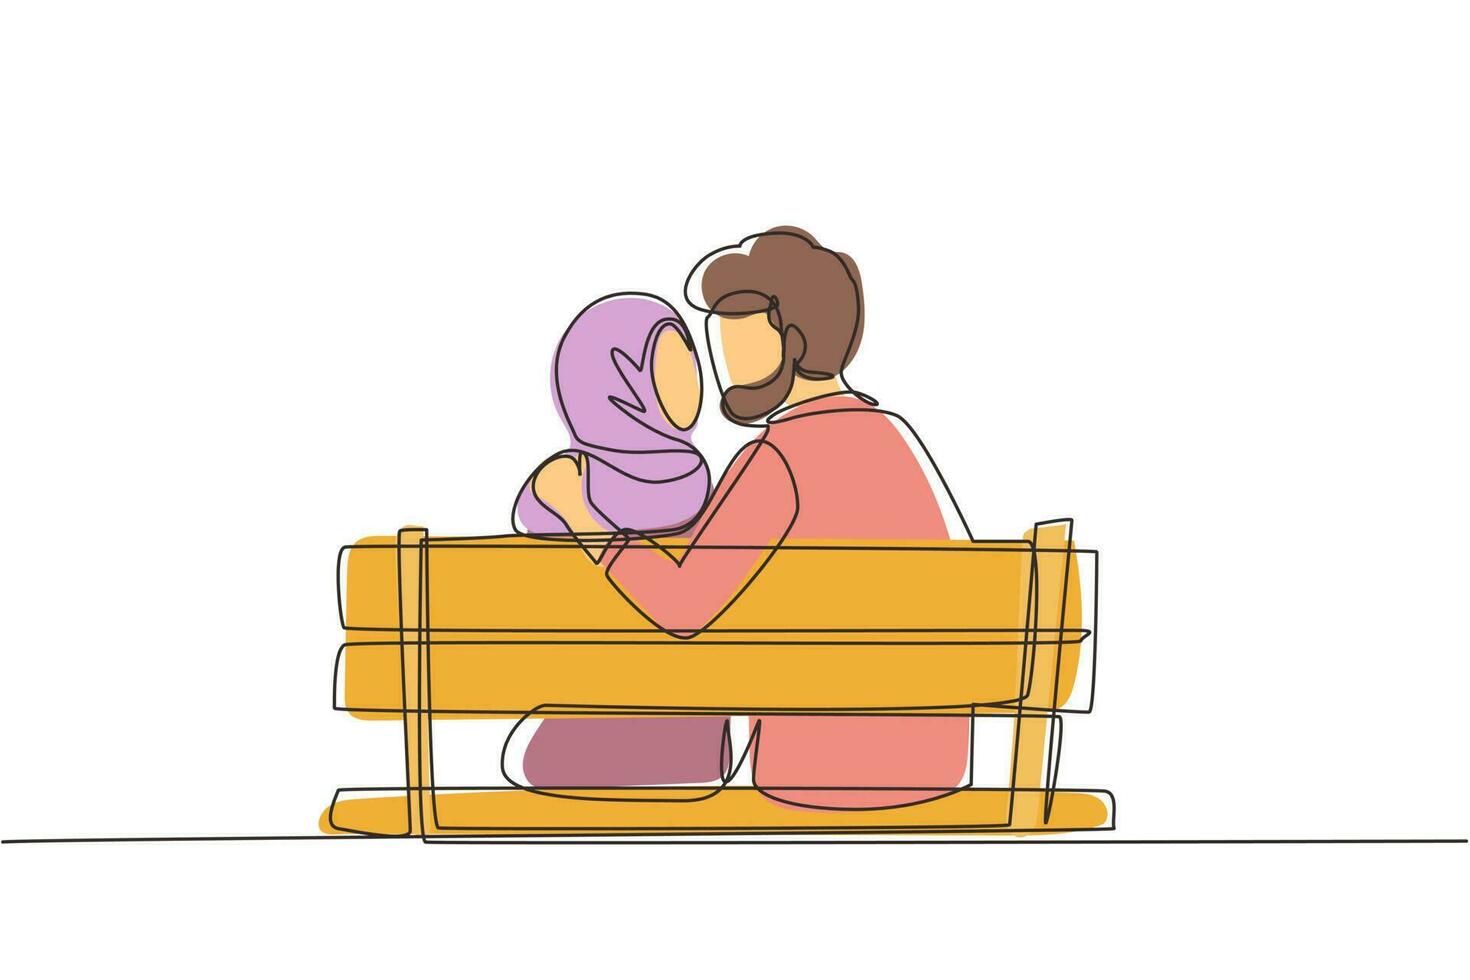 kontinuierliche eine Linie Zeichnung Rückansicht Arabisches Paar küsst sich auf der Bank in der romantischen Landschaft des Parks. glück kerl und mädchen beziehung verliebt. einzeiliges zeichnen design vektorgrafik illustration vektor